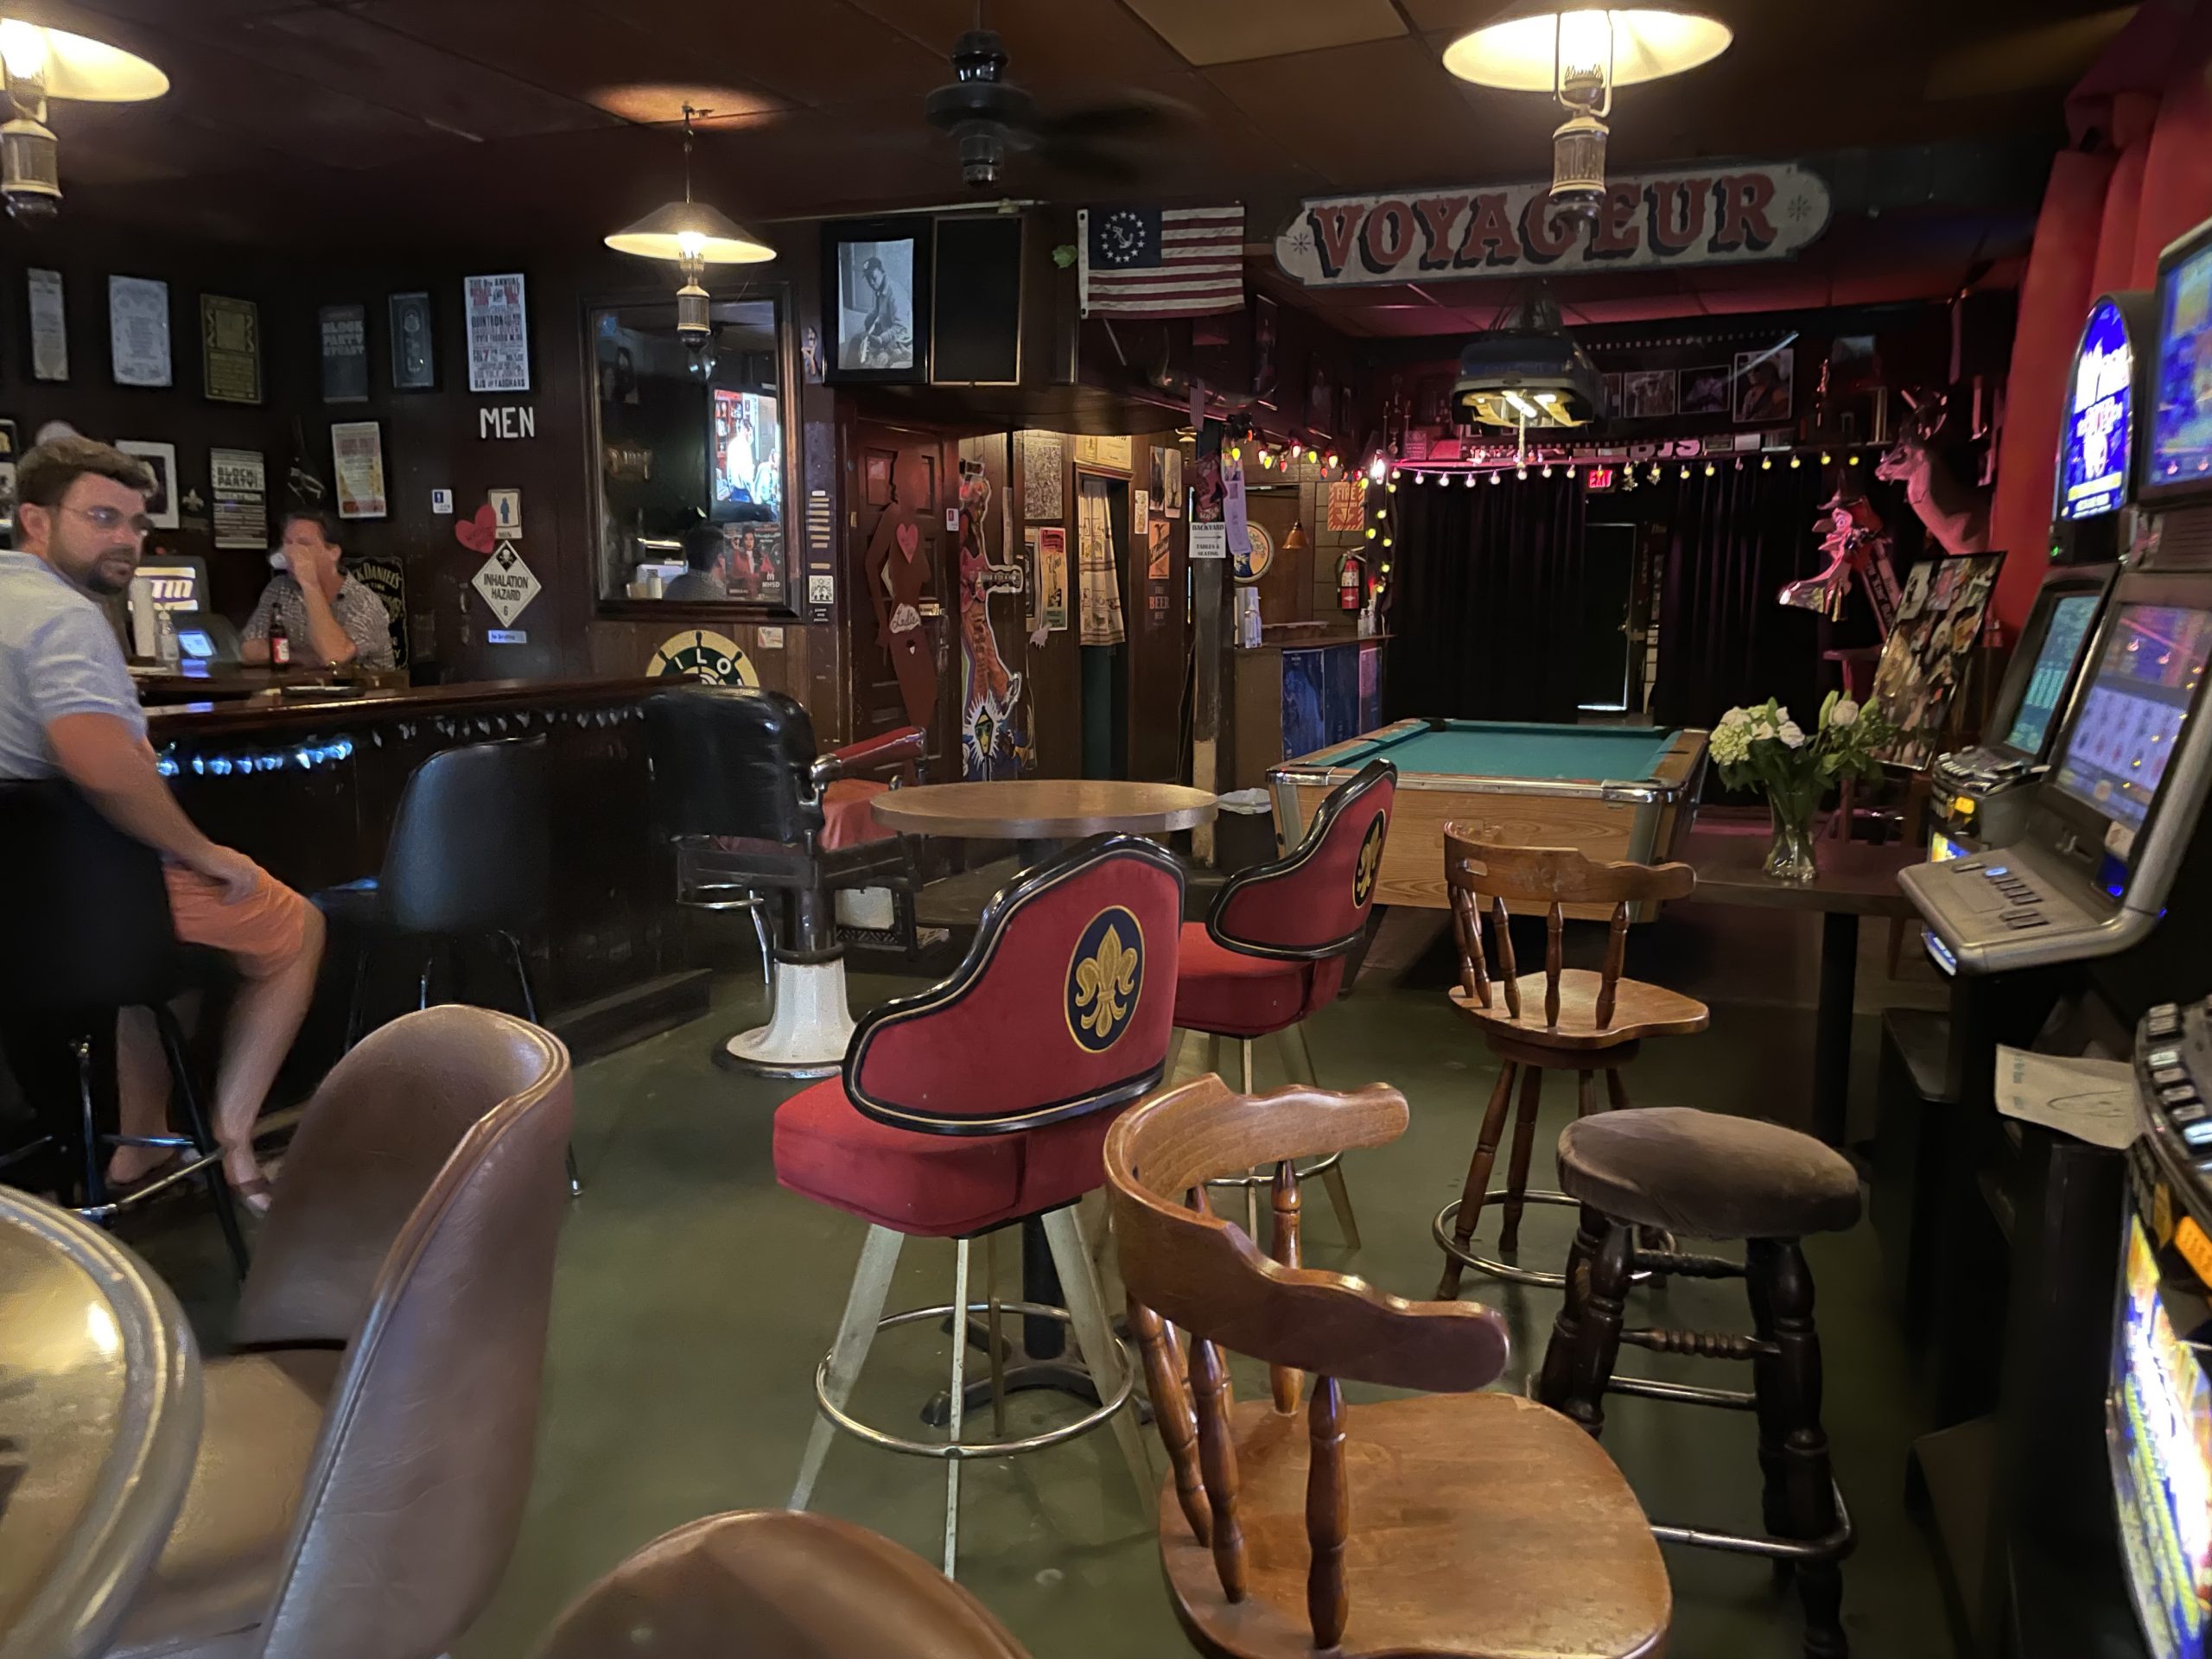 Harbor Tavern - Jacksonville Dive Bar - Outside